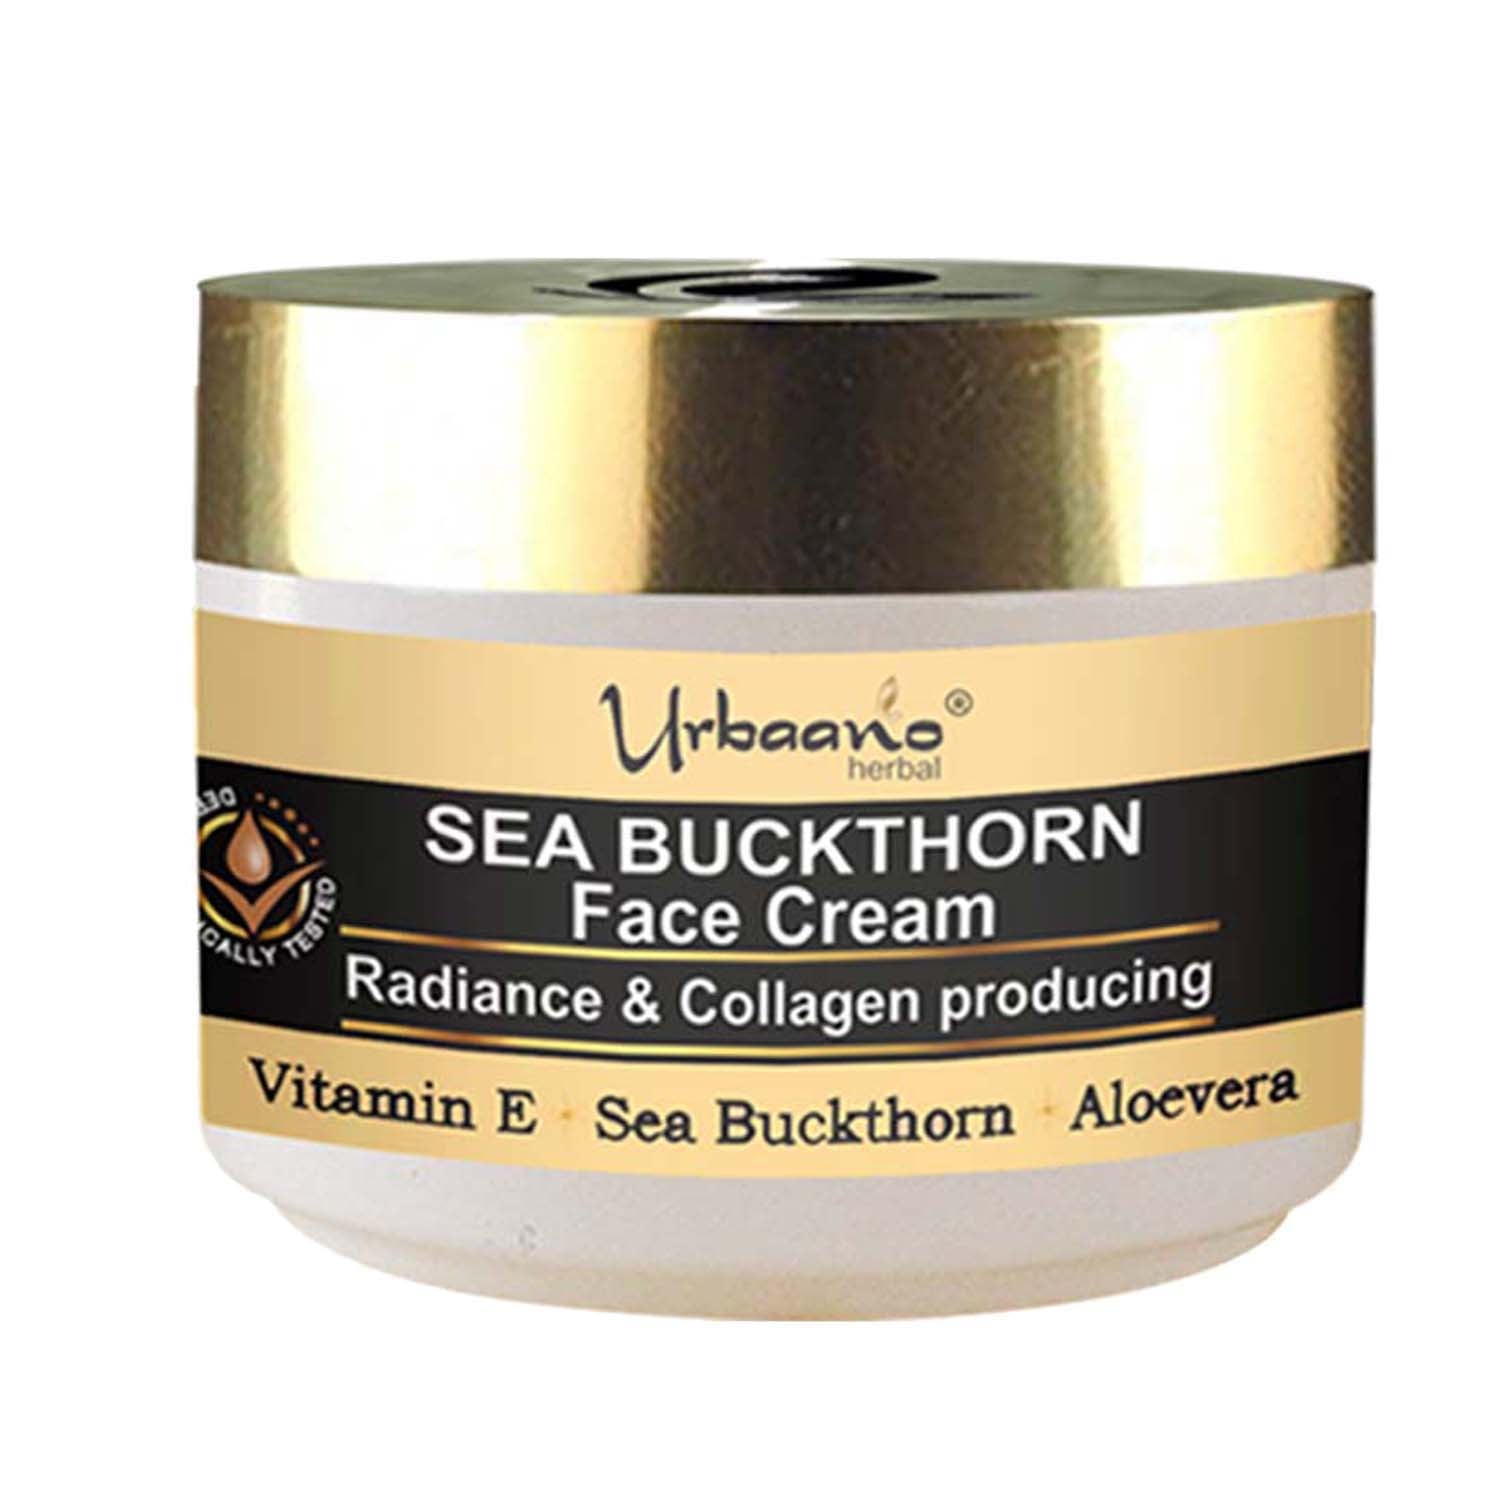 urbaano herbal sea buckthorn radiance & collagen boost face cream moisturizer